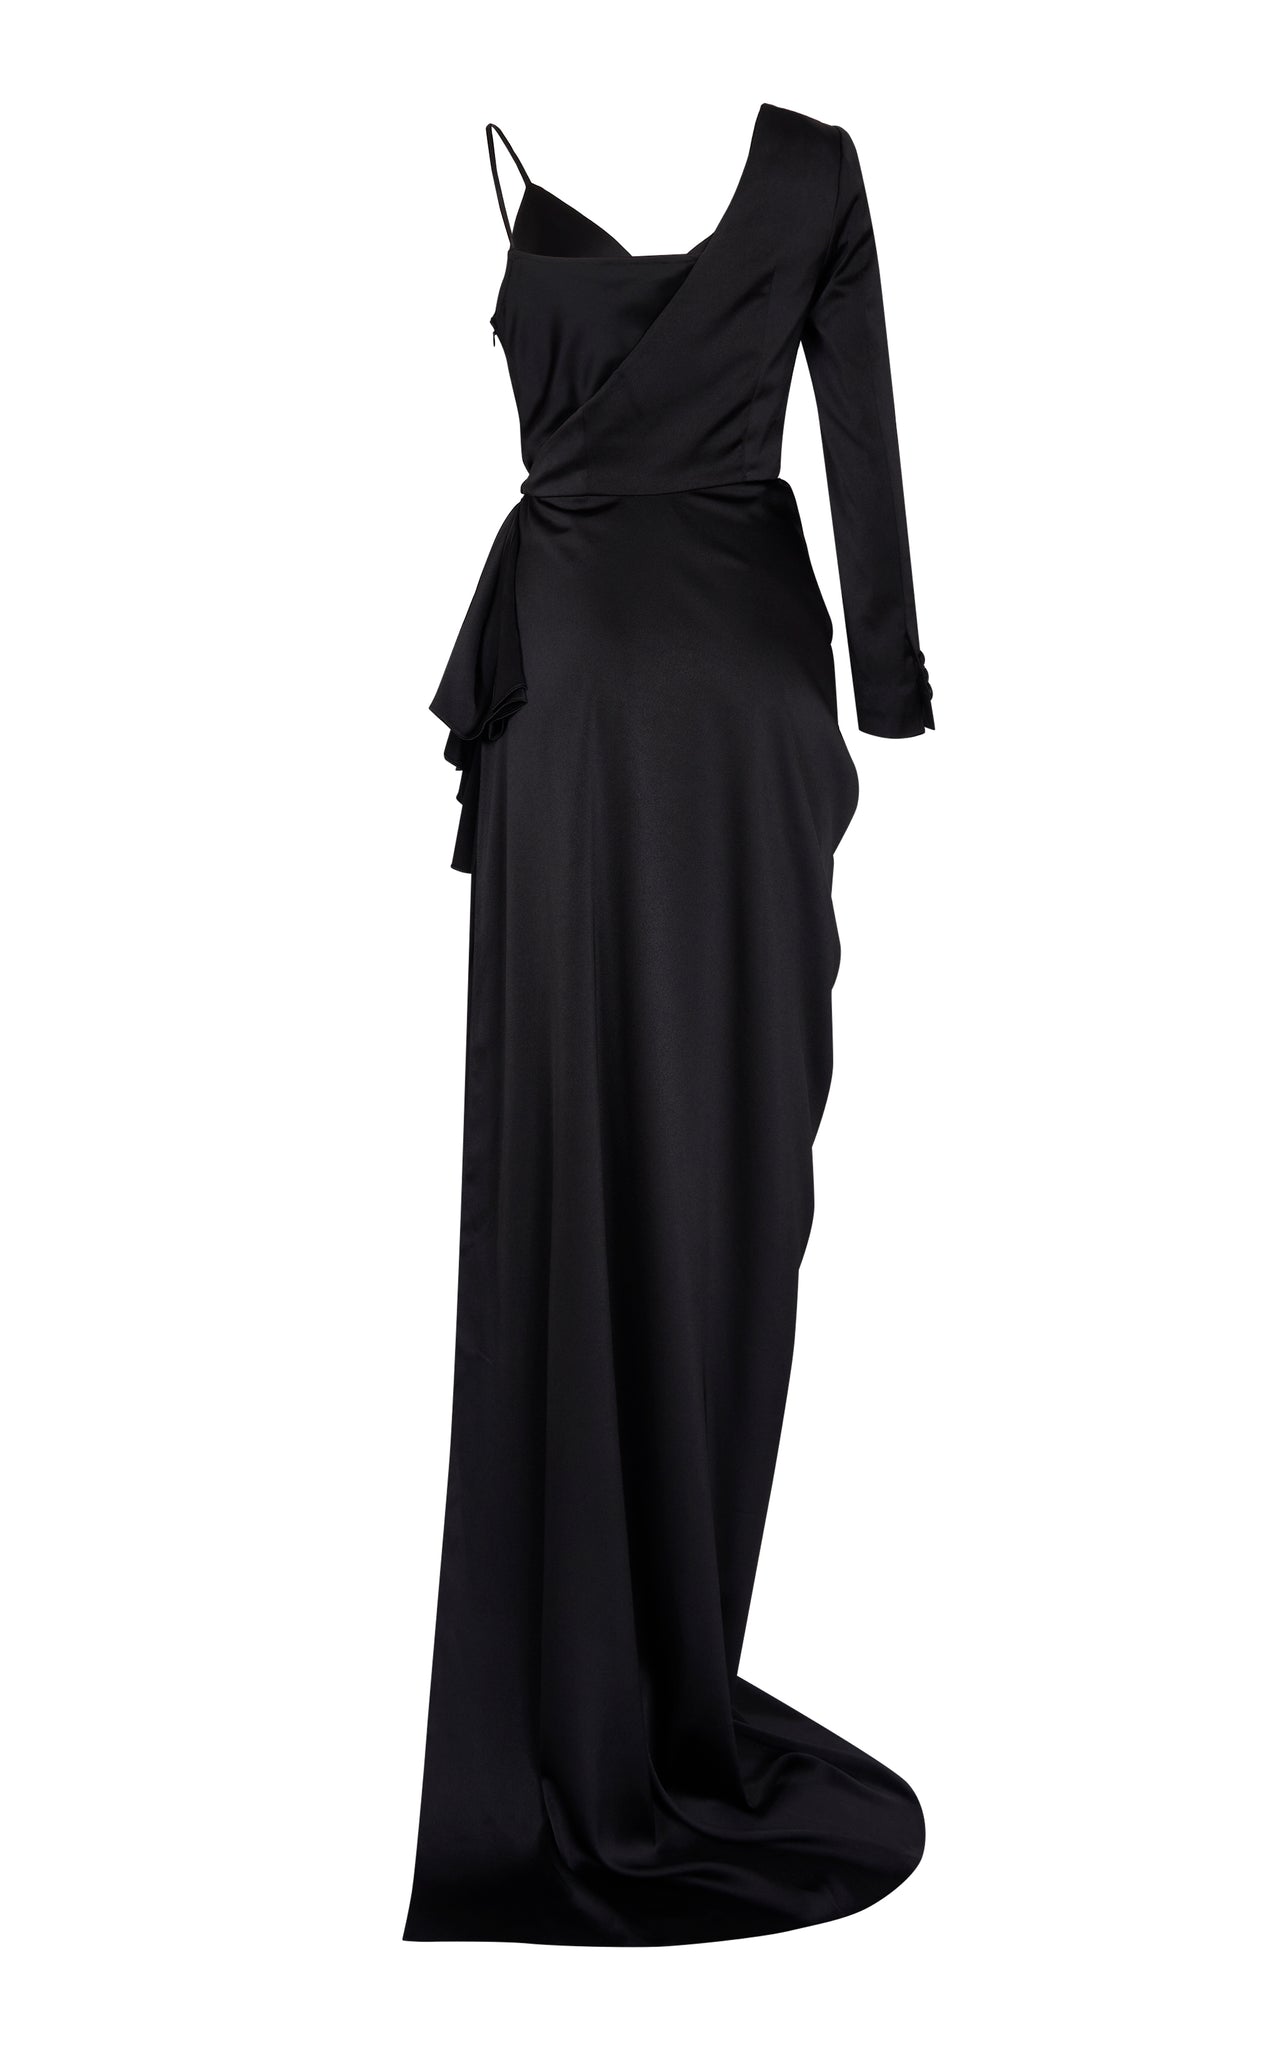 Asymmetrical Black Satin Draped Gown